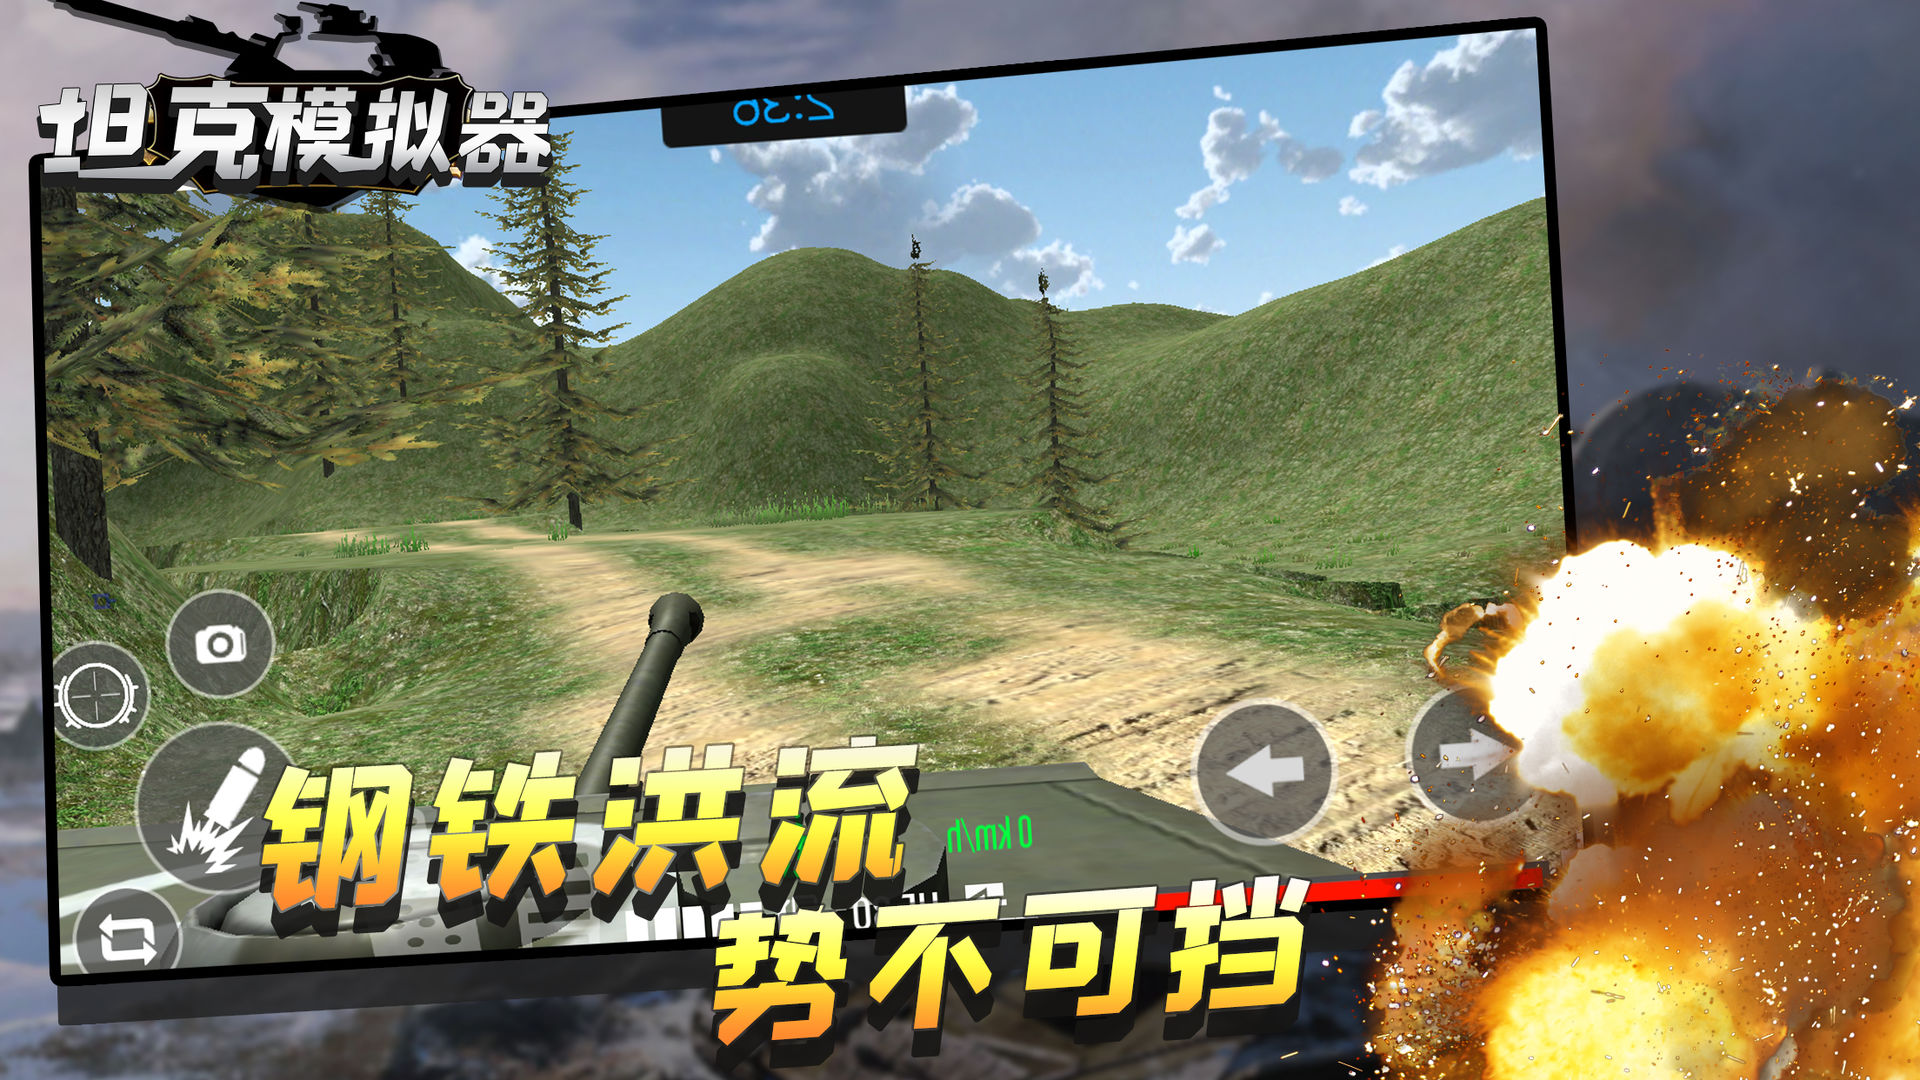 坦克模拟器游戏截图